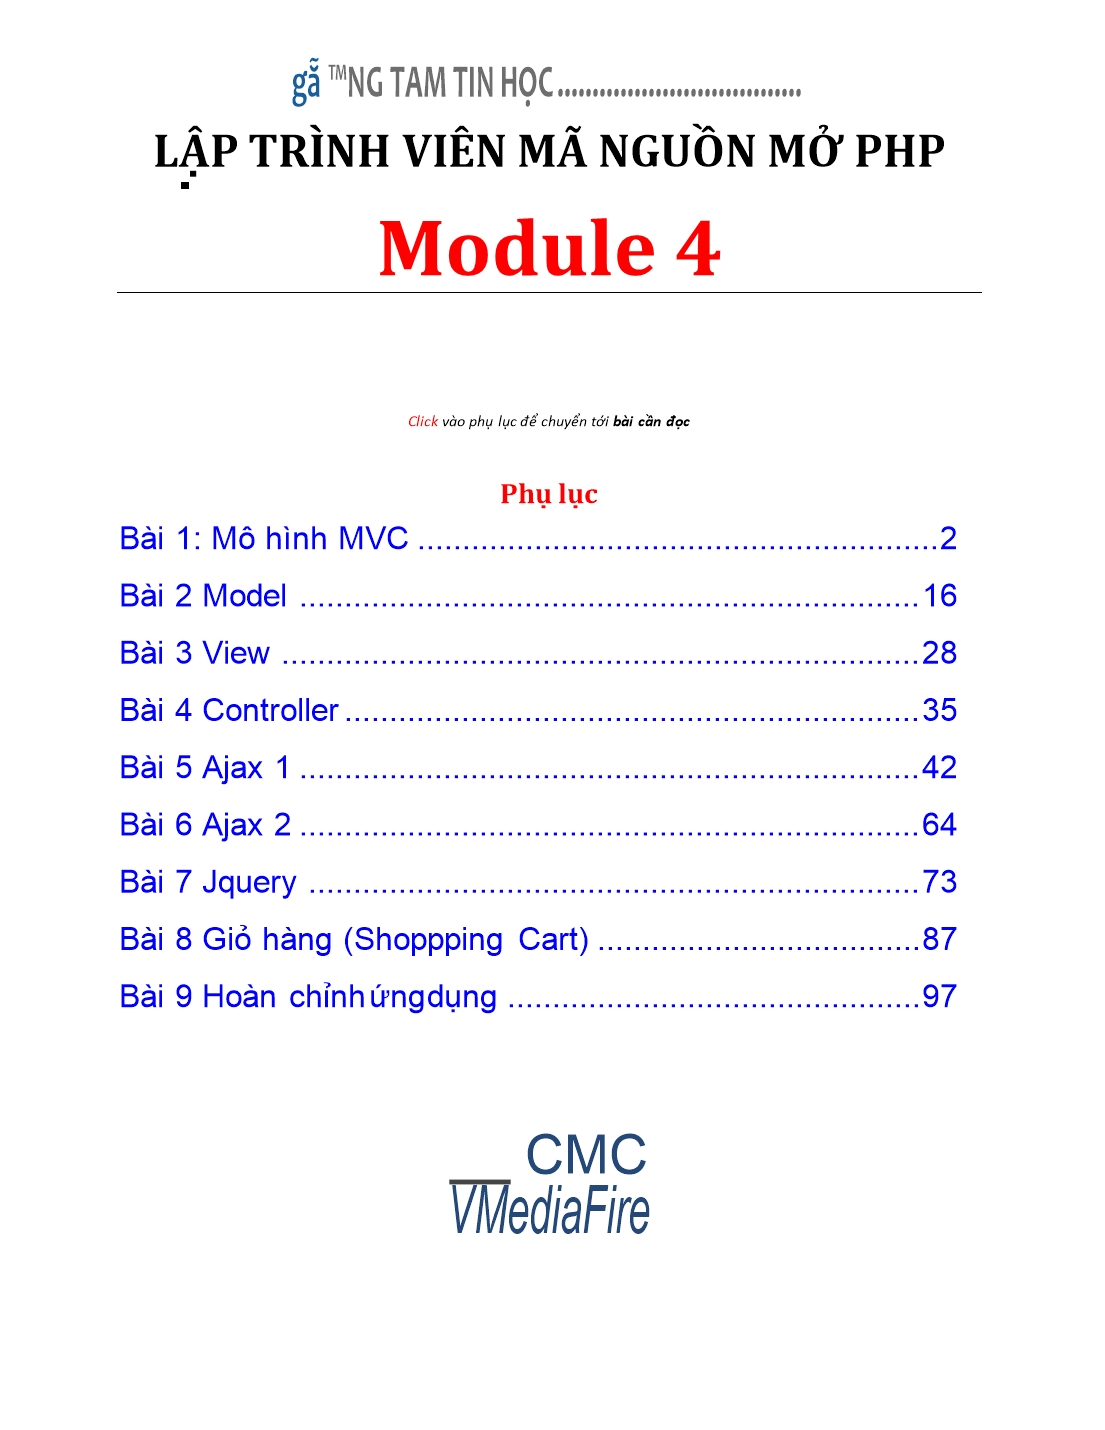 Giáo trình Module 4: Lập trình viên mã nguồn mở PHP - Bài 1: Mô hình MVC trang 1